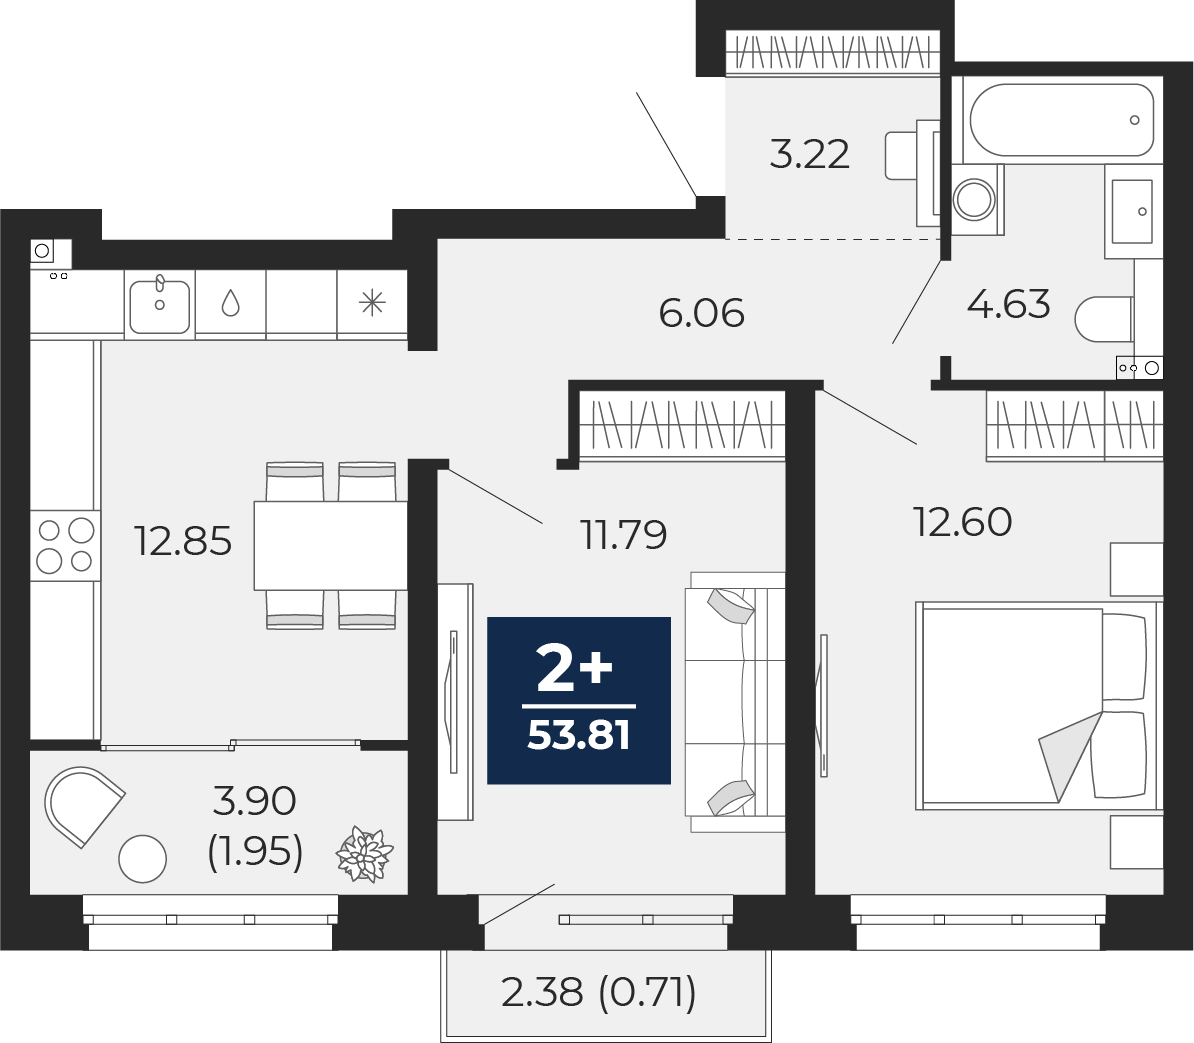 Квартира № 582, 2-комнатная, 53.81 кв. м, 8 этаж